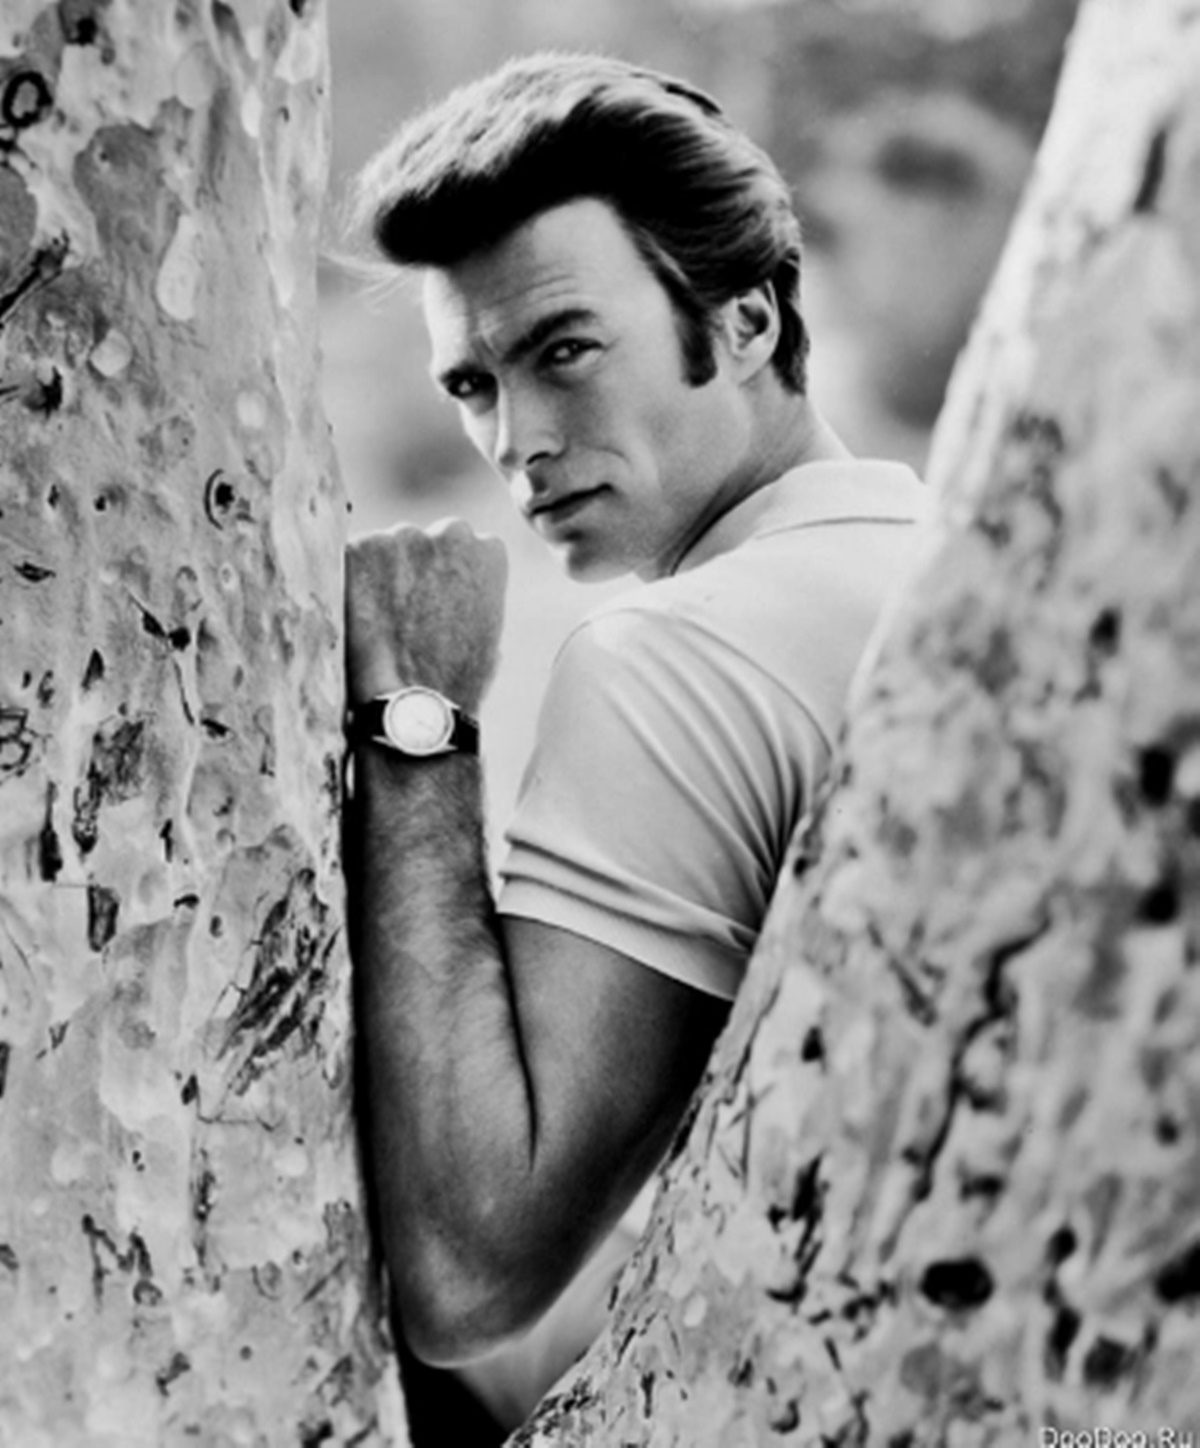 Clint Eastwood fiatalkori fotója – Elképesztően jóképű volt a színészlegenda